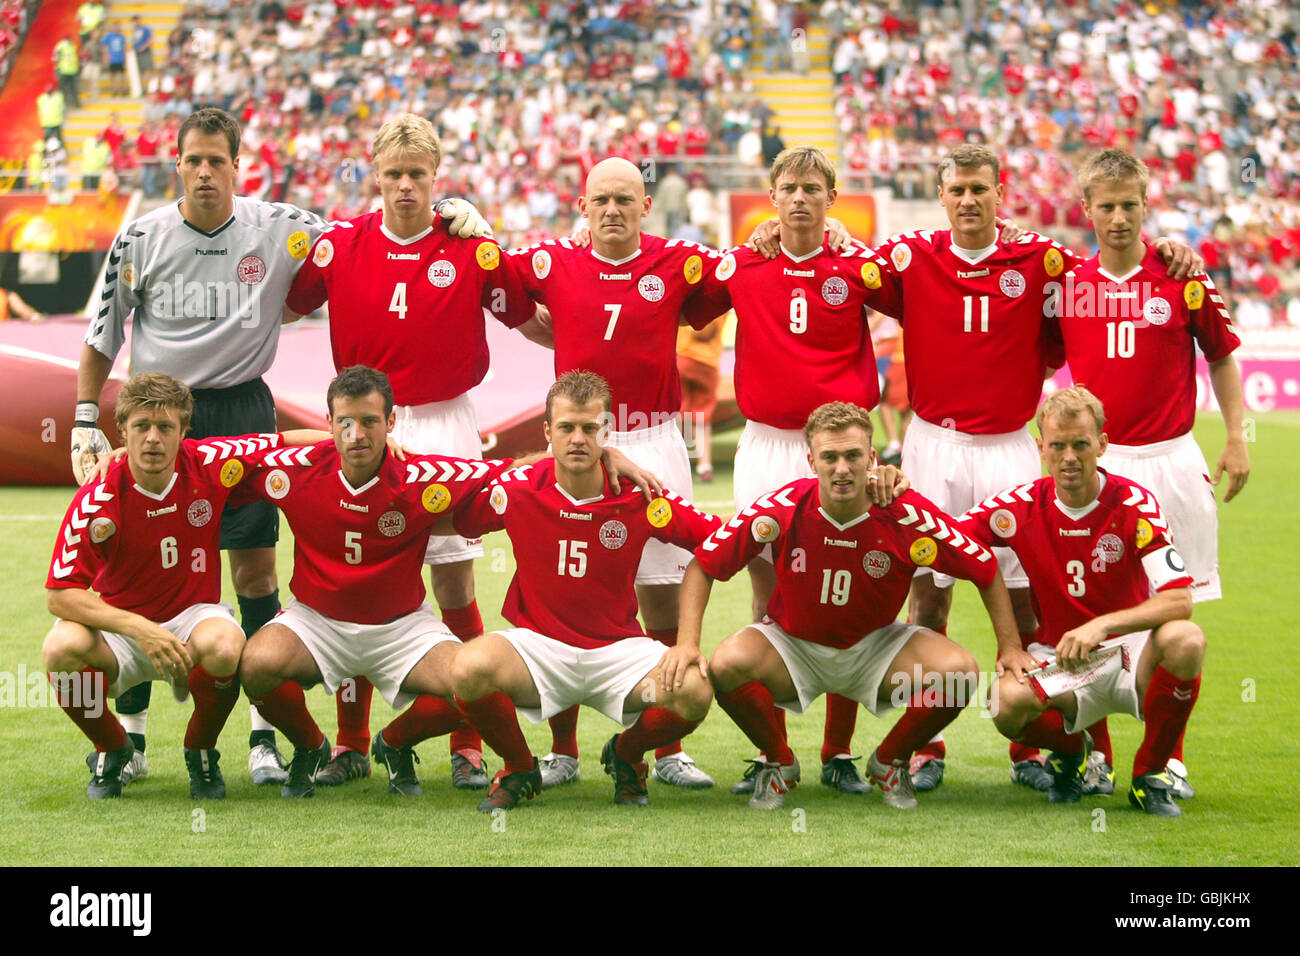 Soccer - UEFA European Championship 2004 - Group C - Bulgaria v Denmark. Denmark team group Stock Photo